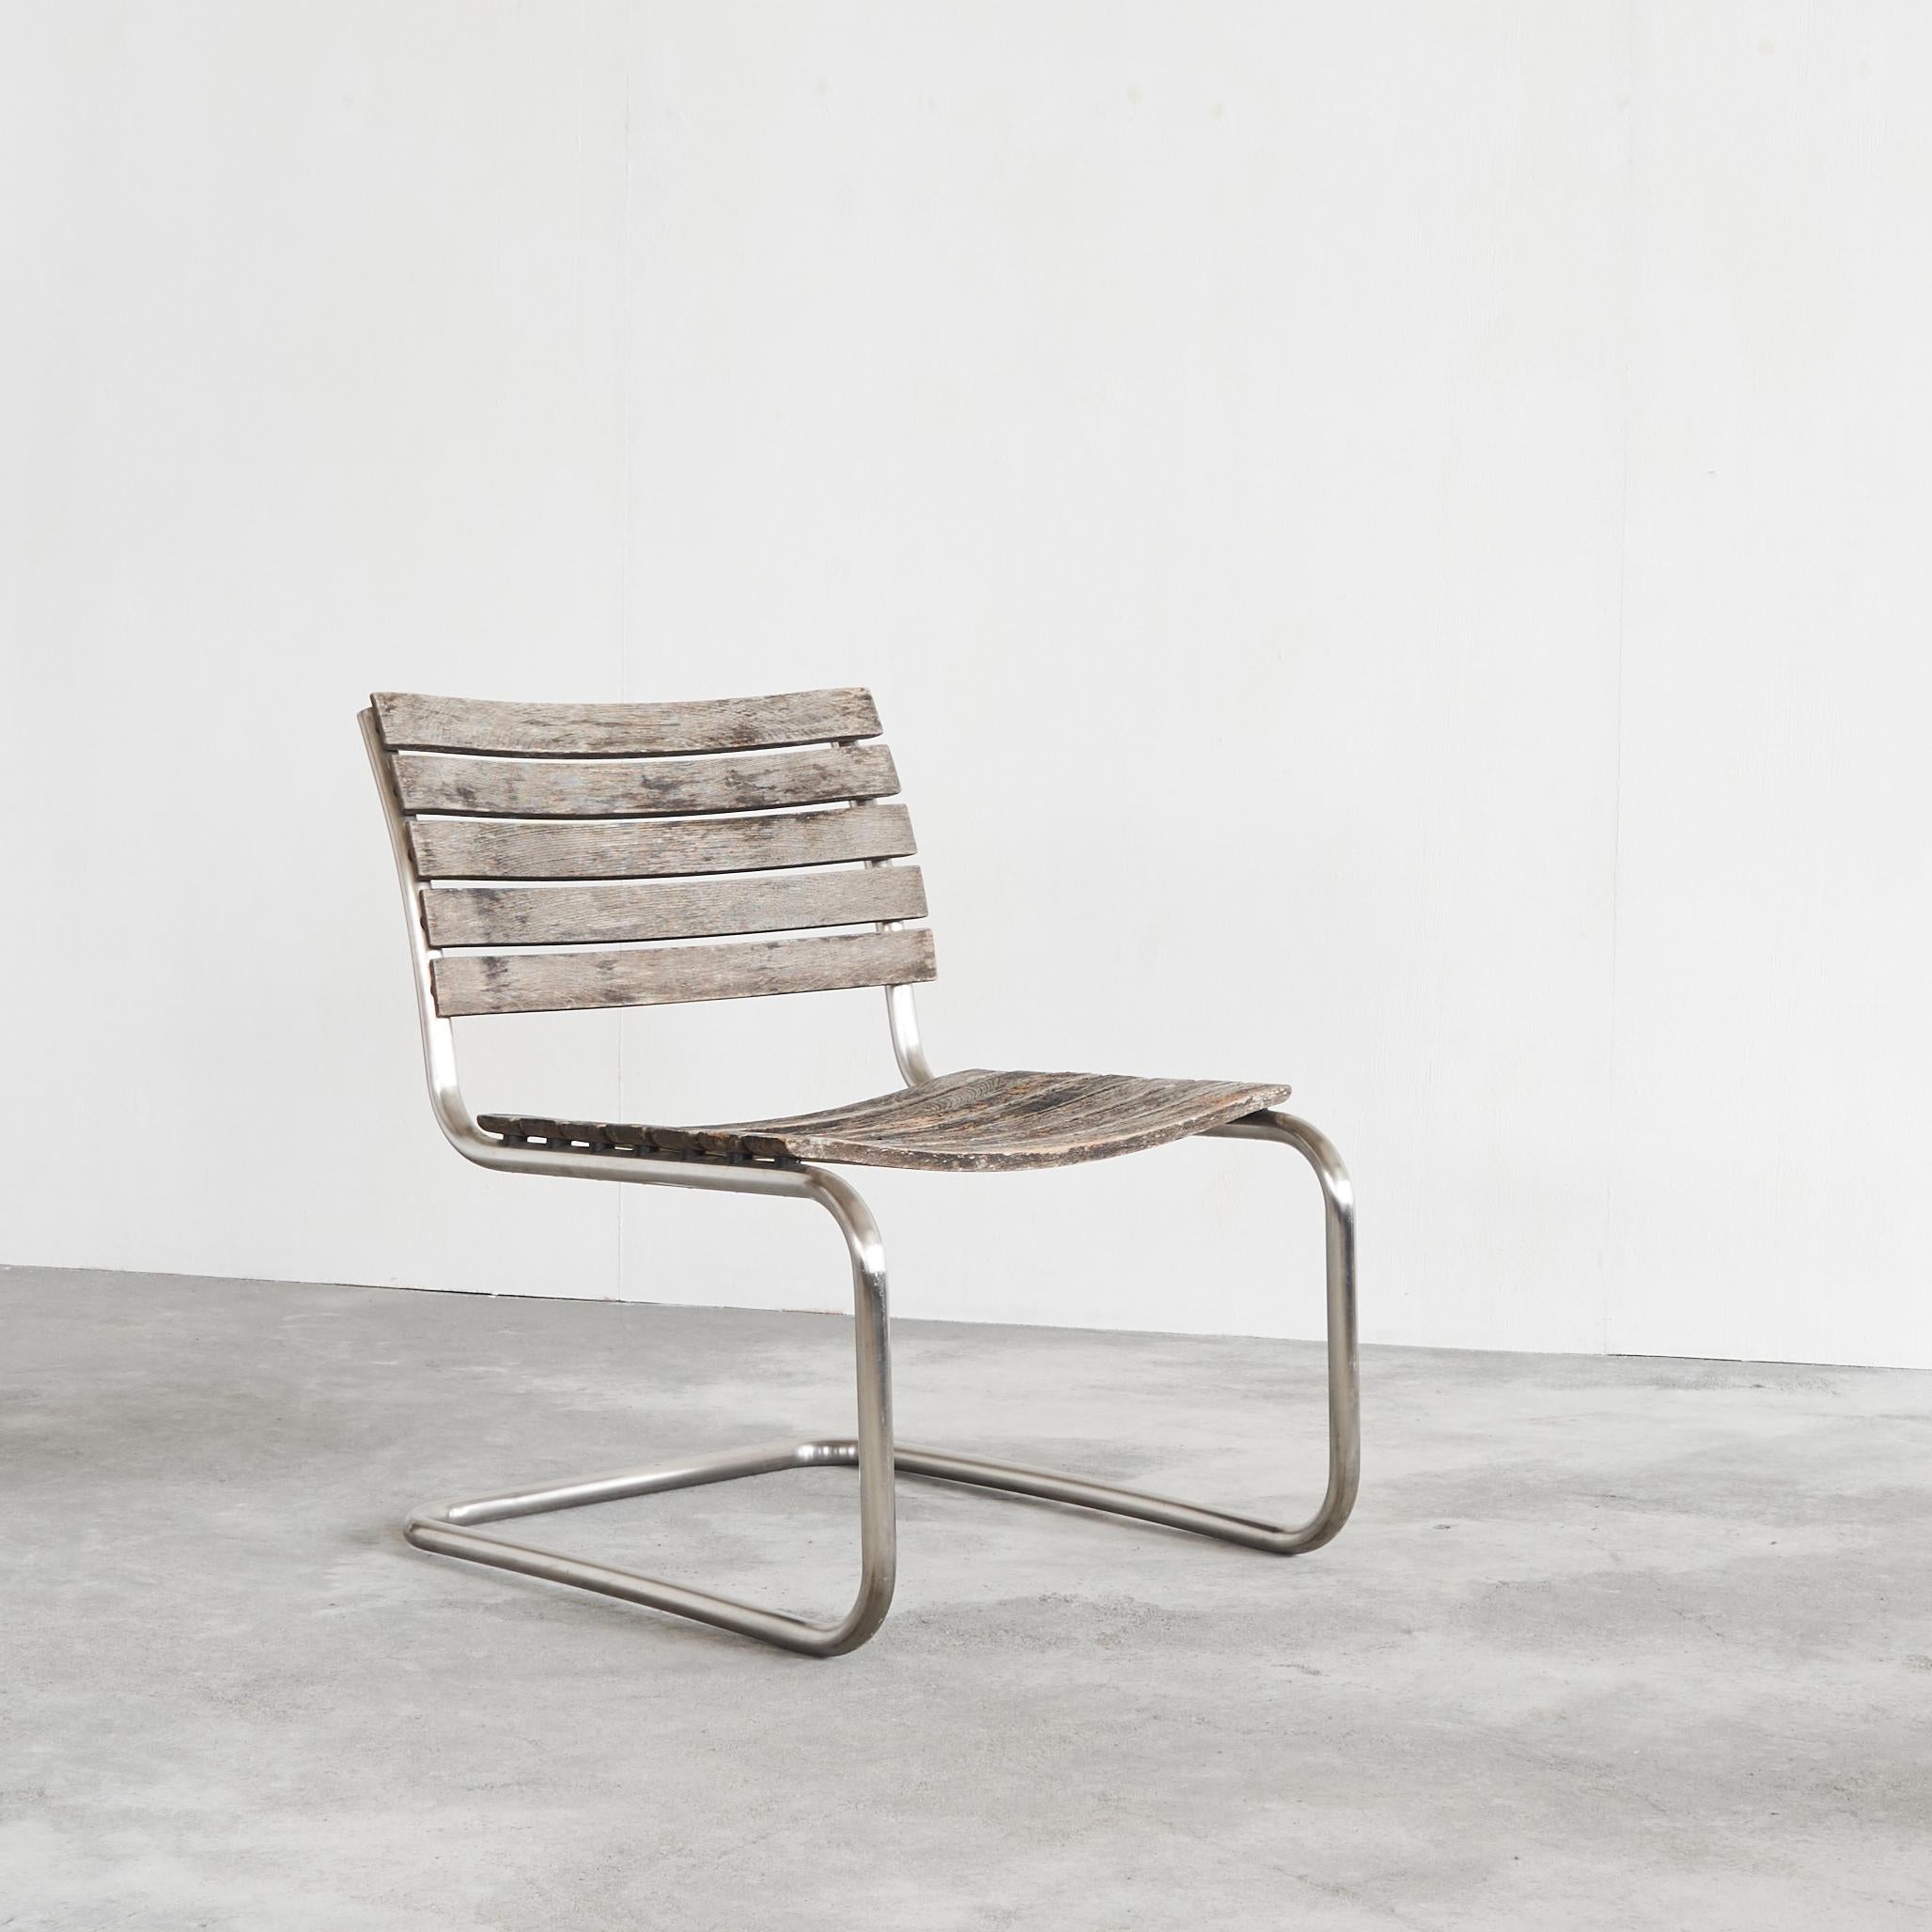 Mart Stam Lounge Chair für Thonet aus verwittertem massivem Iroko und Edelstahl, Deutschland, frühes 21. Jahrhundert.

Schöne und seltene Lounge-Version des S40-Stuhls von Mart Stam, der nicht mehr produziert wird. Ausgabe des frühen 21.